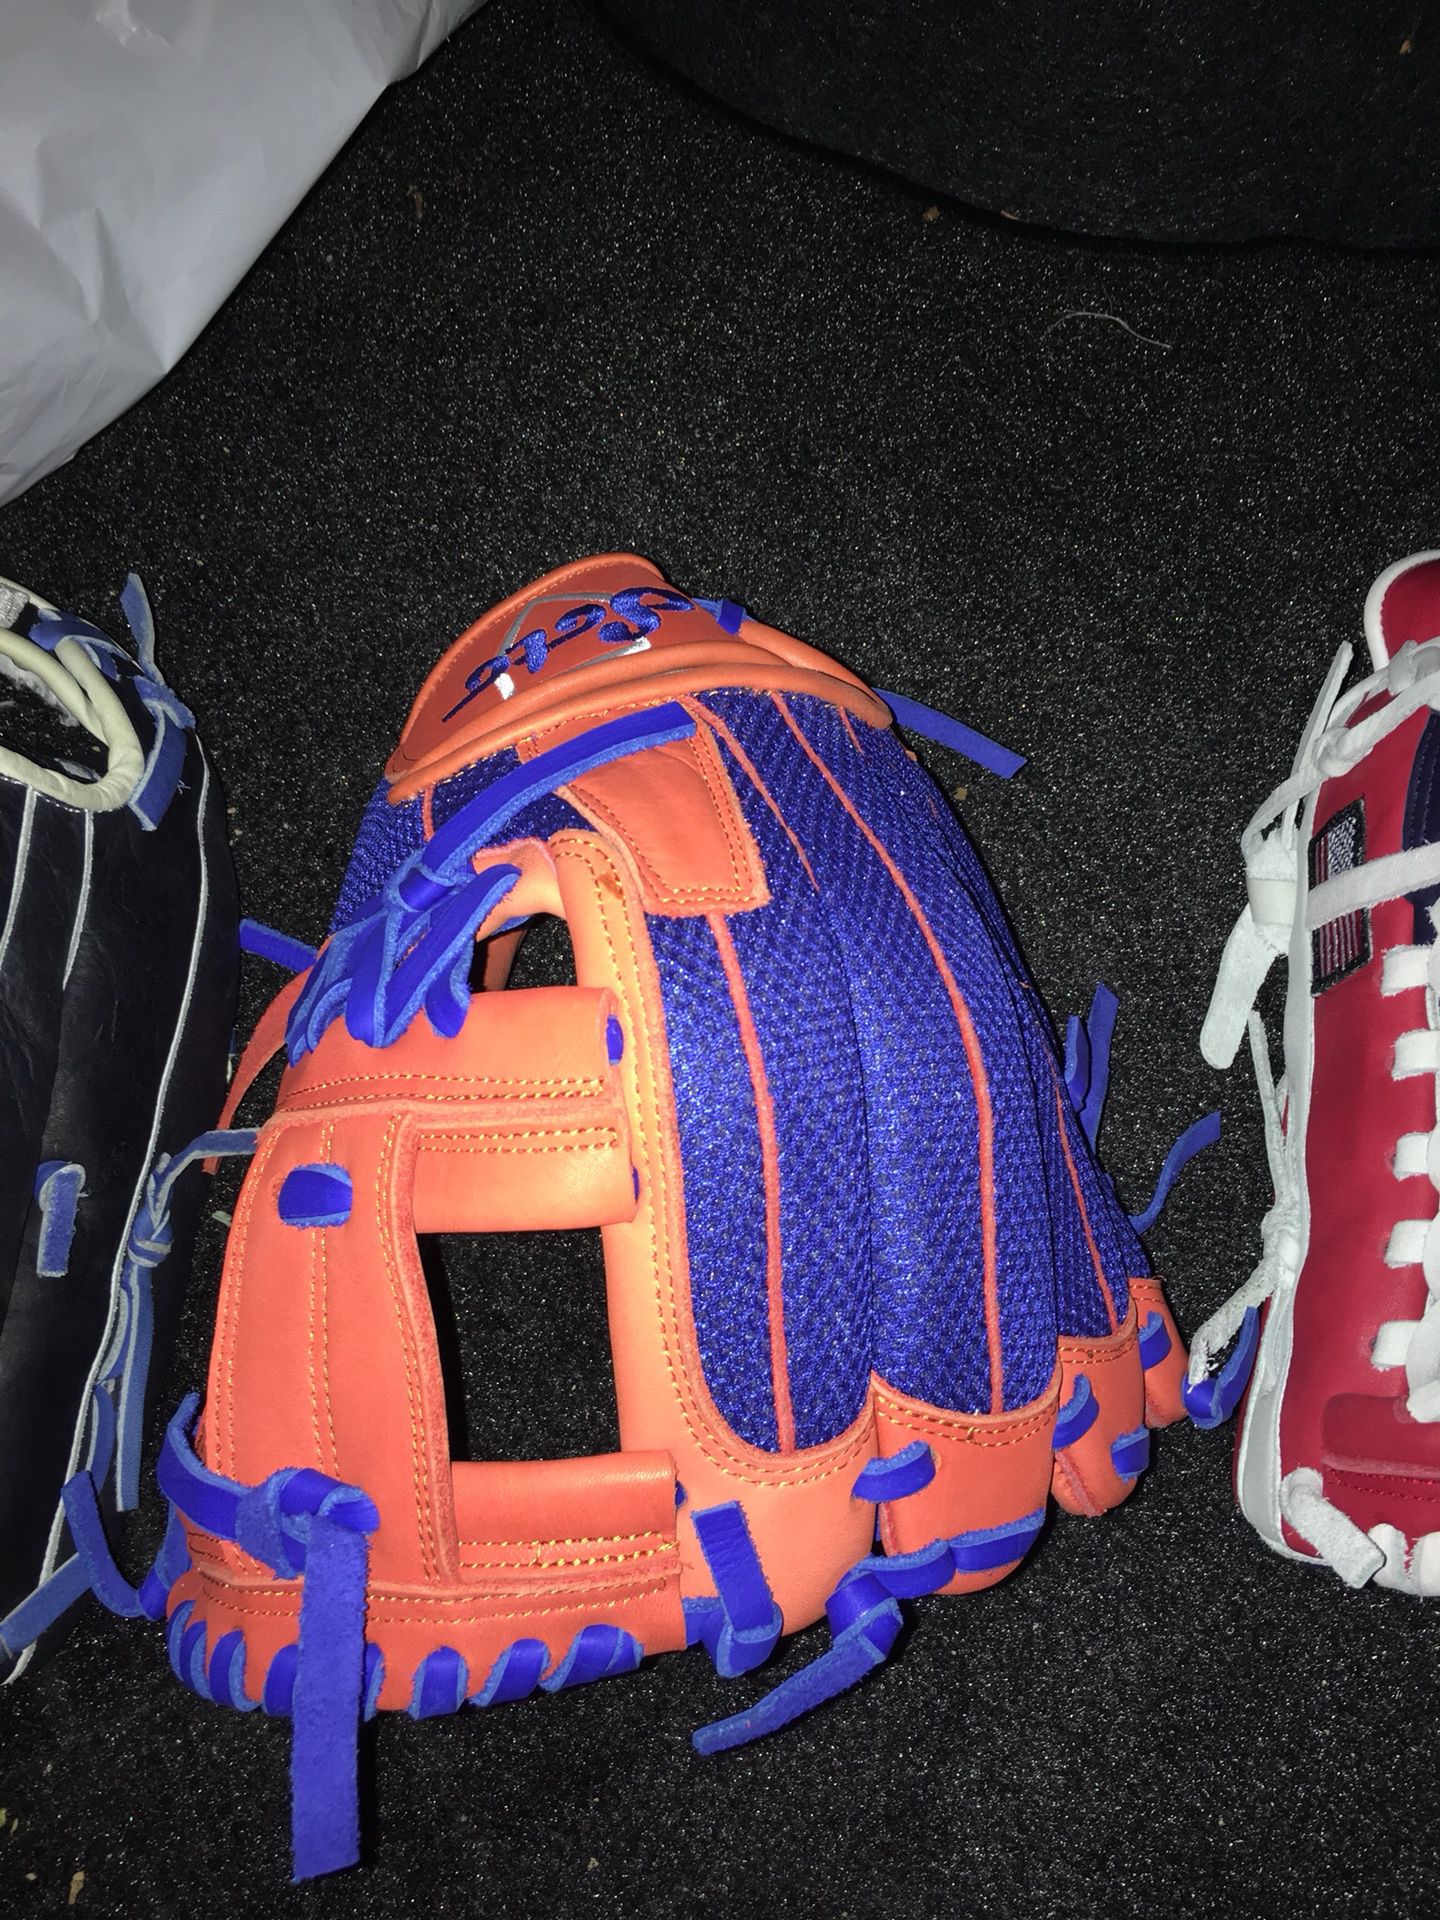 Soto pro series RHT 11.75 baseball glove